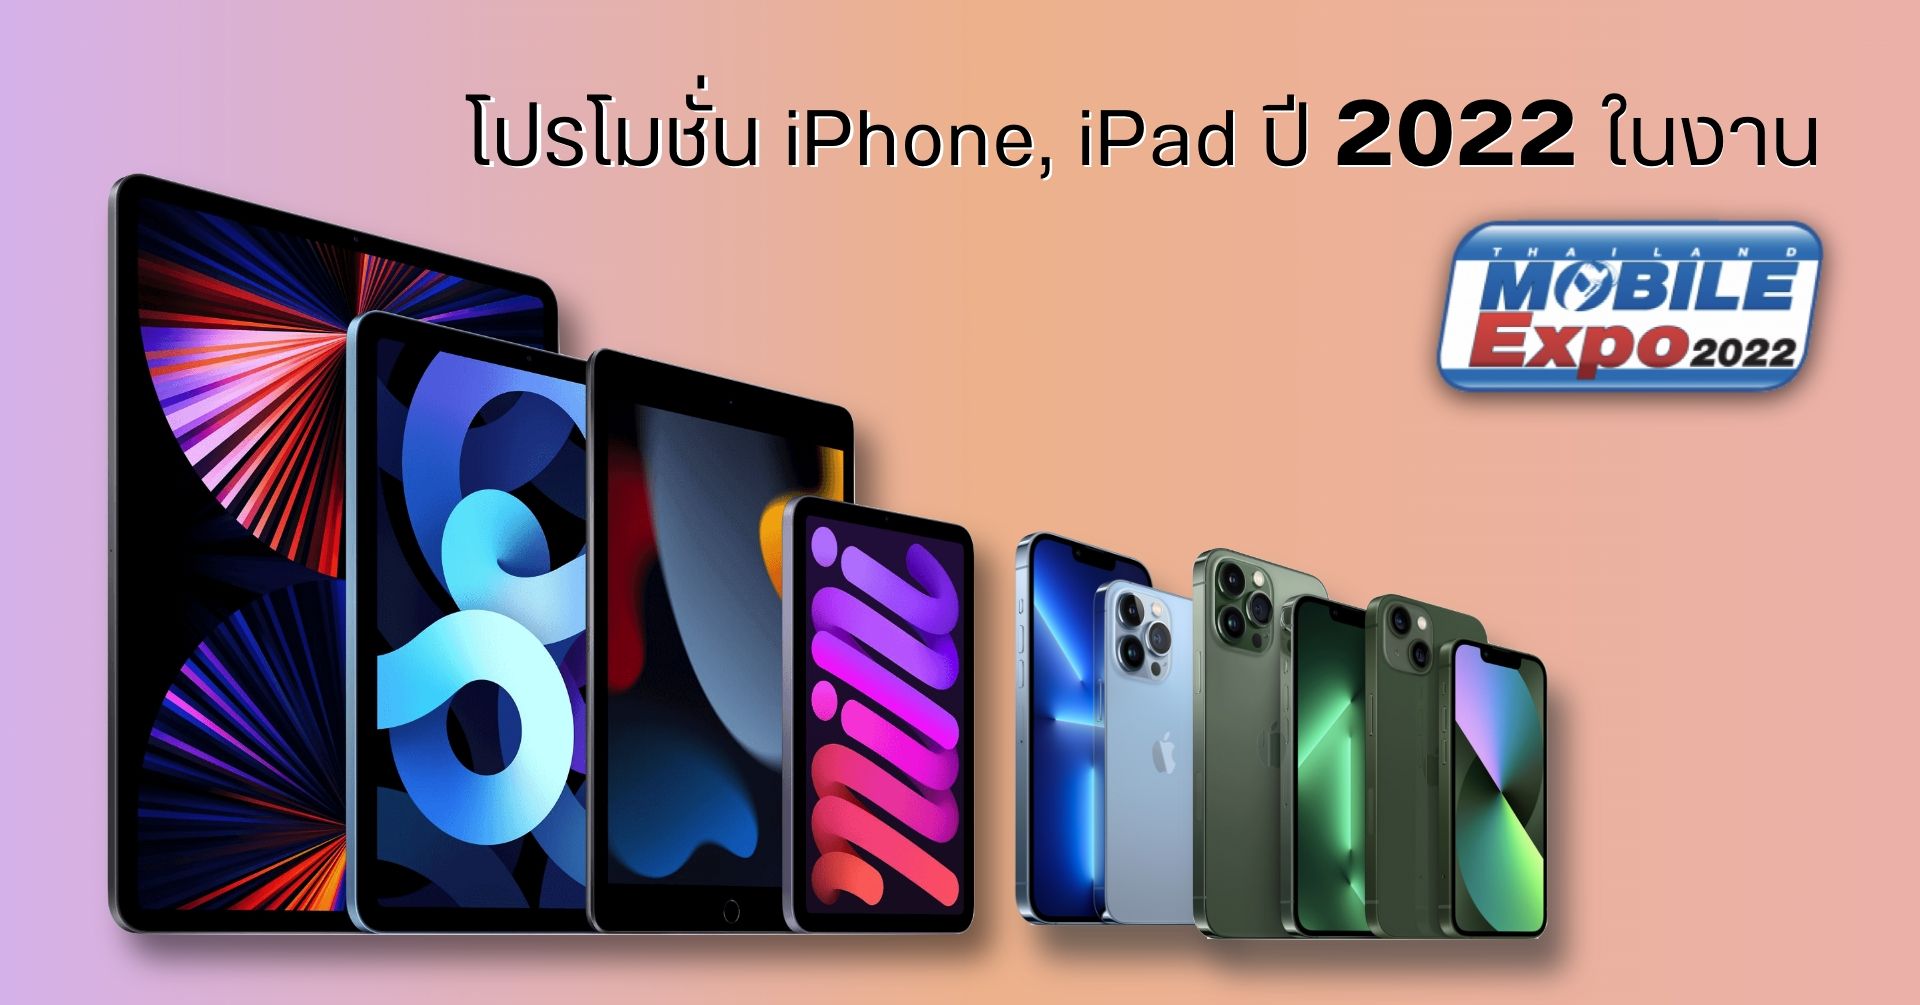 รวมโปรโมชั่น iPhone และ iPad ราคาพิเศษ ใน งาน Thailand Mobile Expo 2022